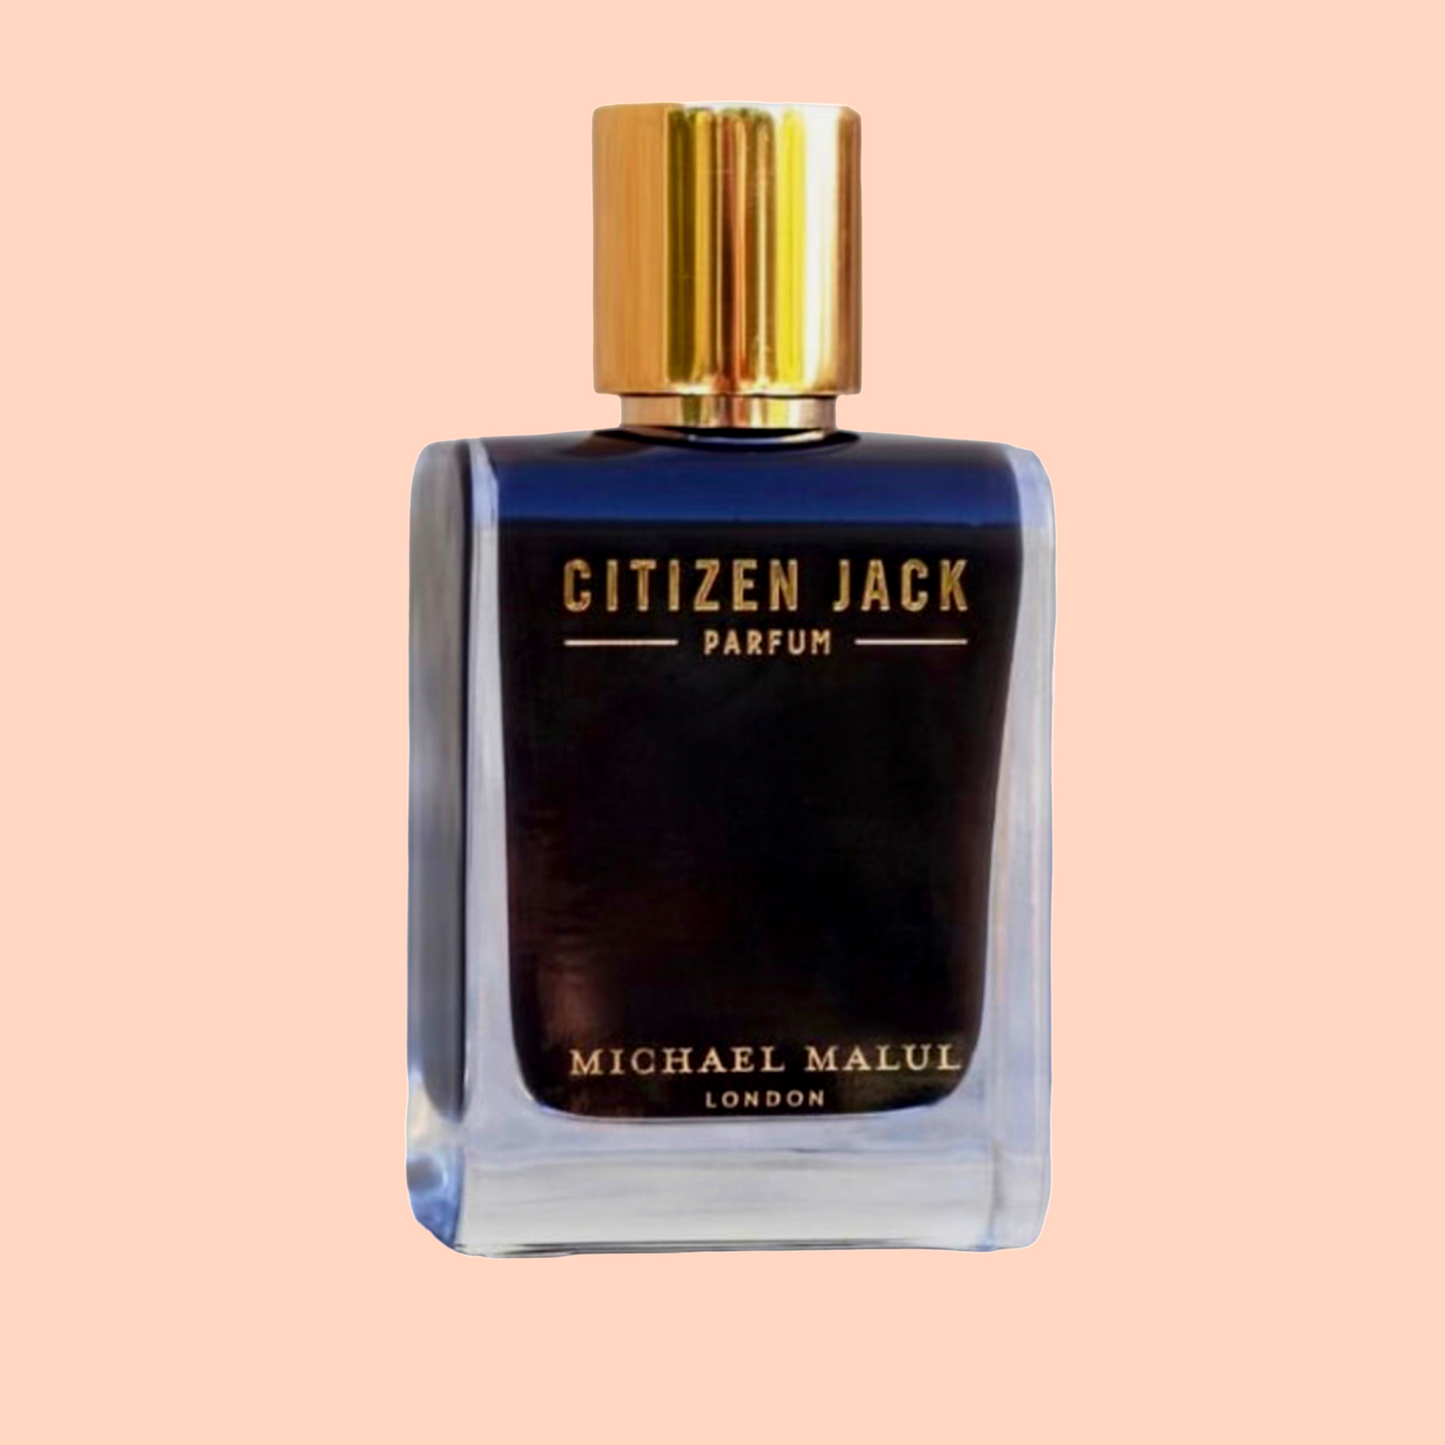 Citizen Jack (Unisex) Parfum by Michael Malul